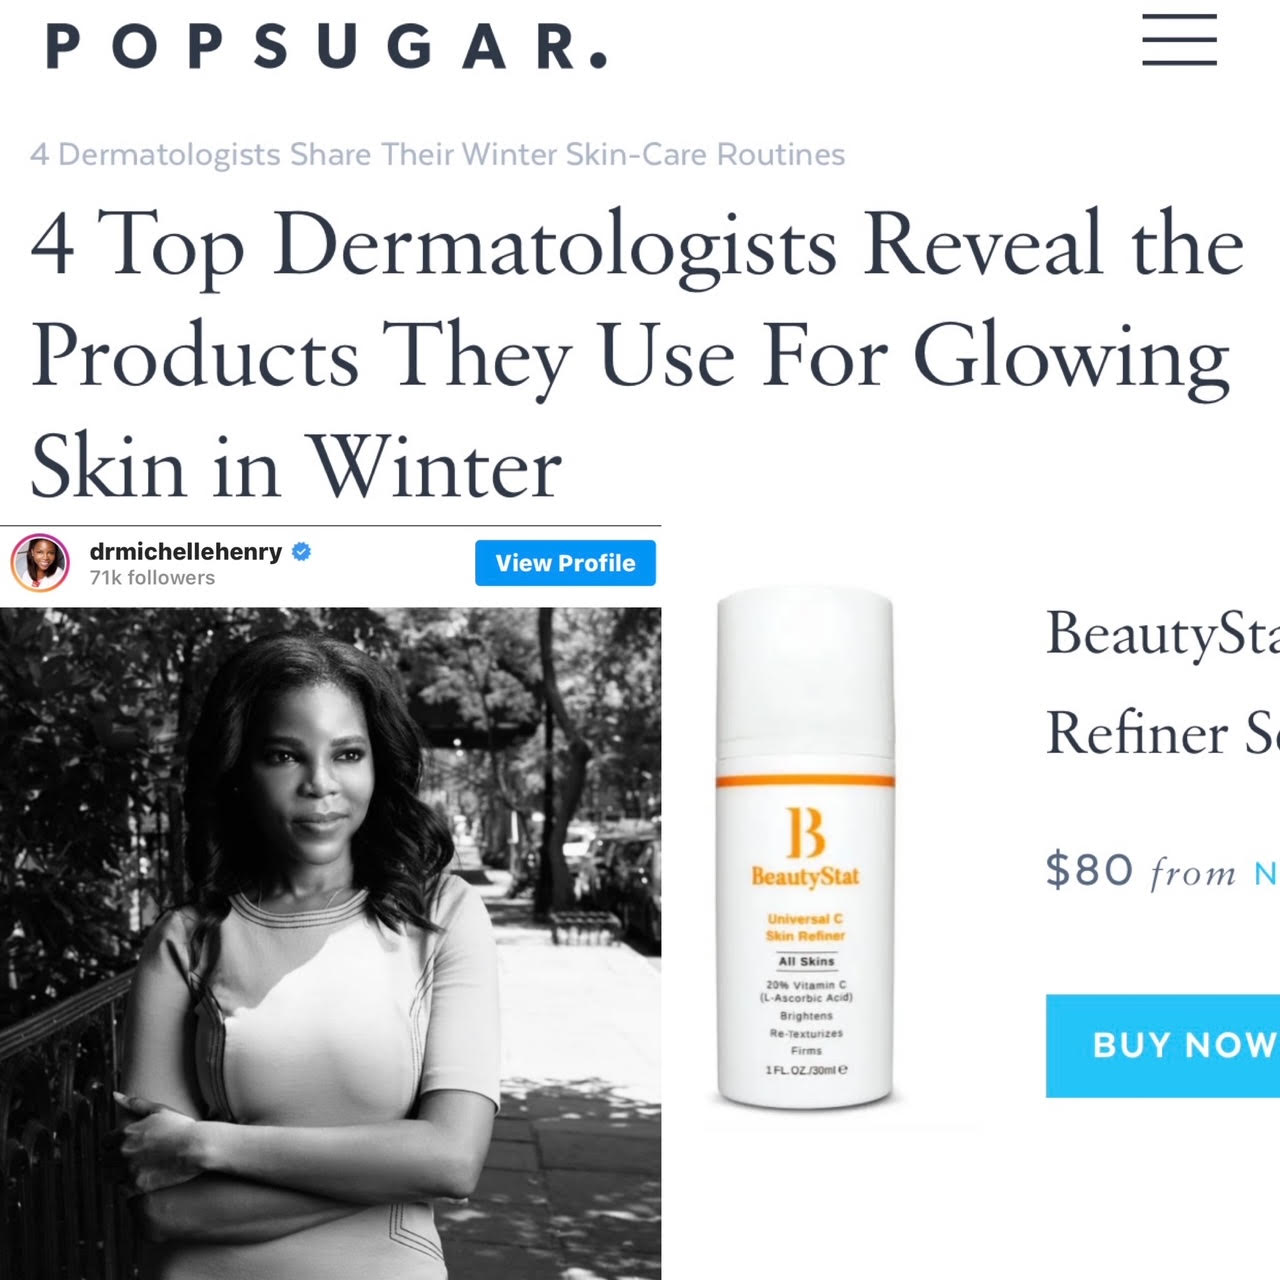 In PopSugar: Dermatologists Recommend Universal C Skin Refiner As Best Brightening Vitamin C Serum